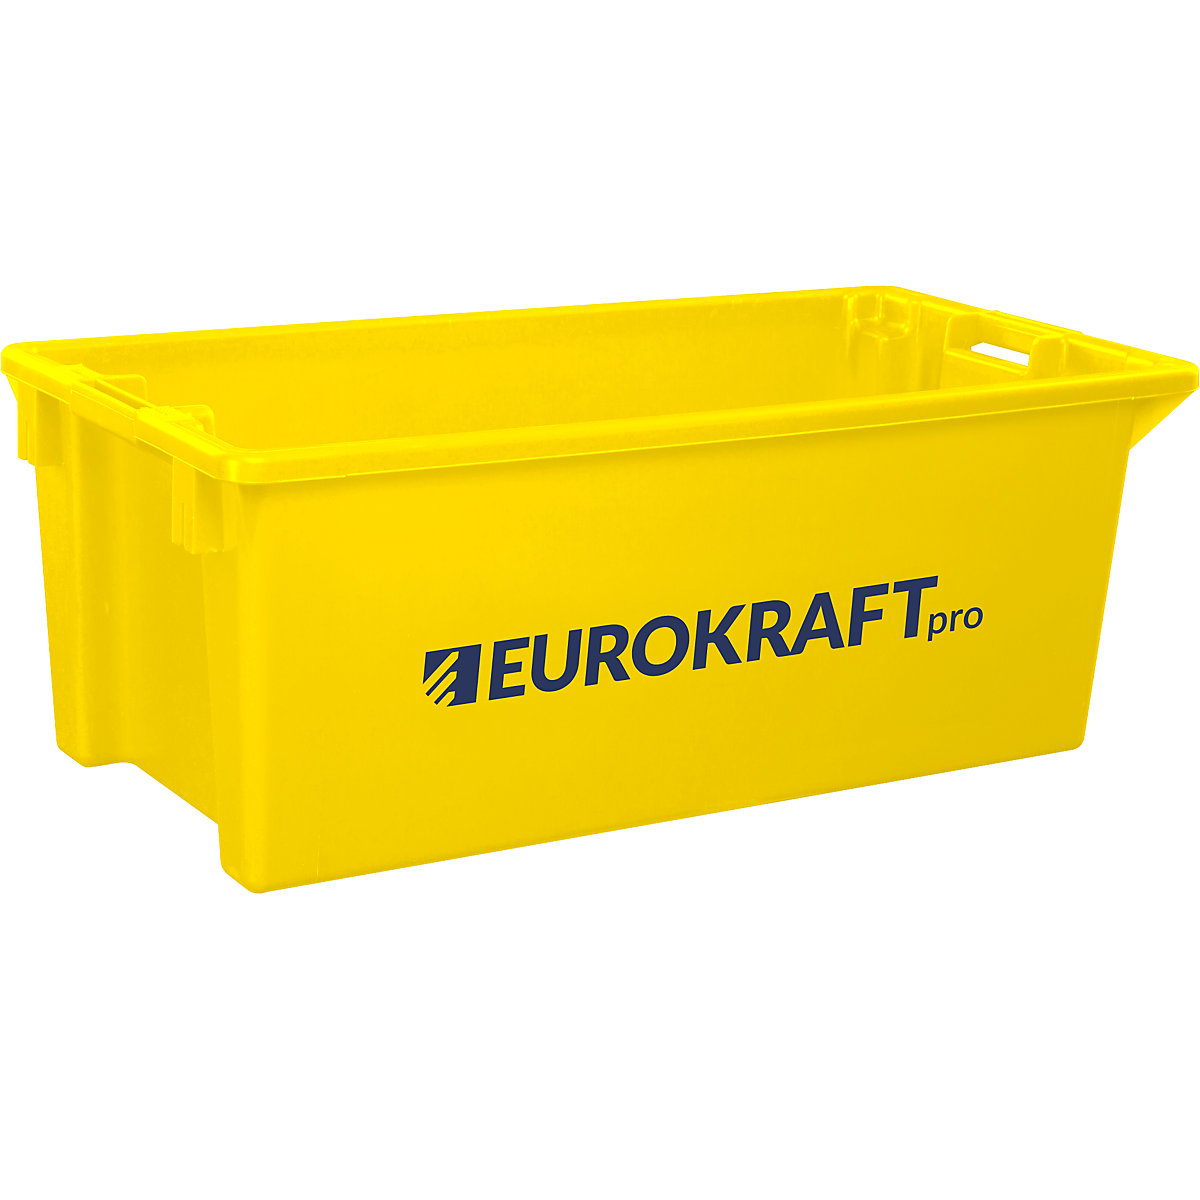 EUROKRAFTpro – Otočná stohovací nádoba z polypropylenu vhodného pro potraviny, obsah 13 litrů, bal.j. 4 ks, stěny a dno plné, žlutá